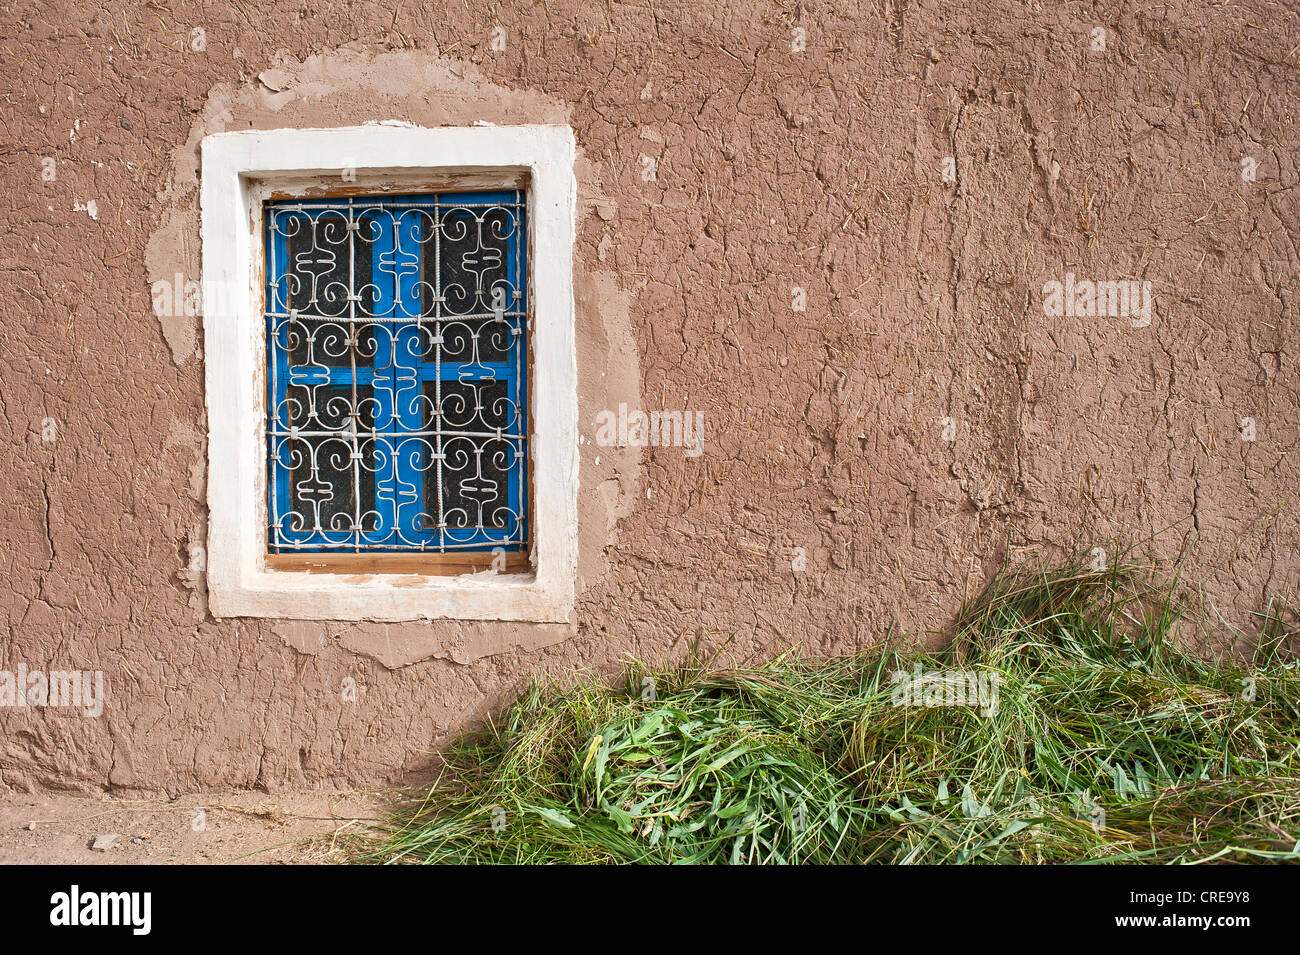 Fassade des ein Haus aus Lehmziegeln, blaue Gitterfenster, grünes Futter auf dem Boden für Haustiere, Atlasgebirge, Marokko Stockfoto